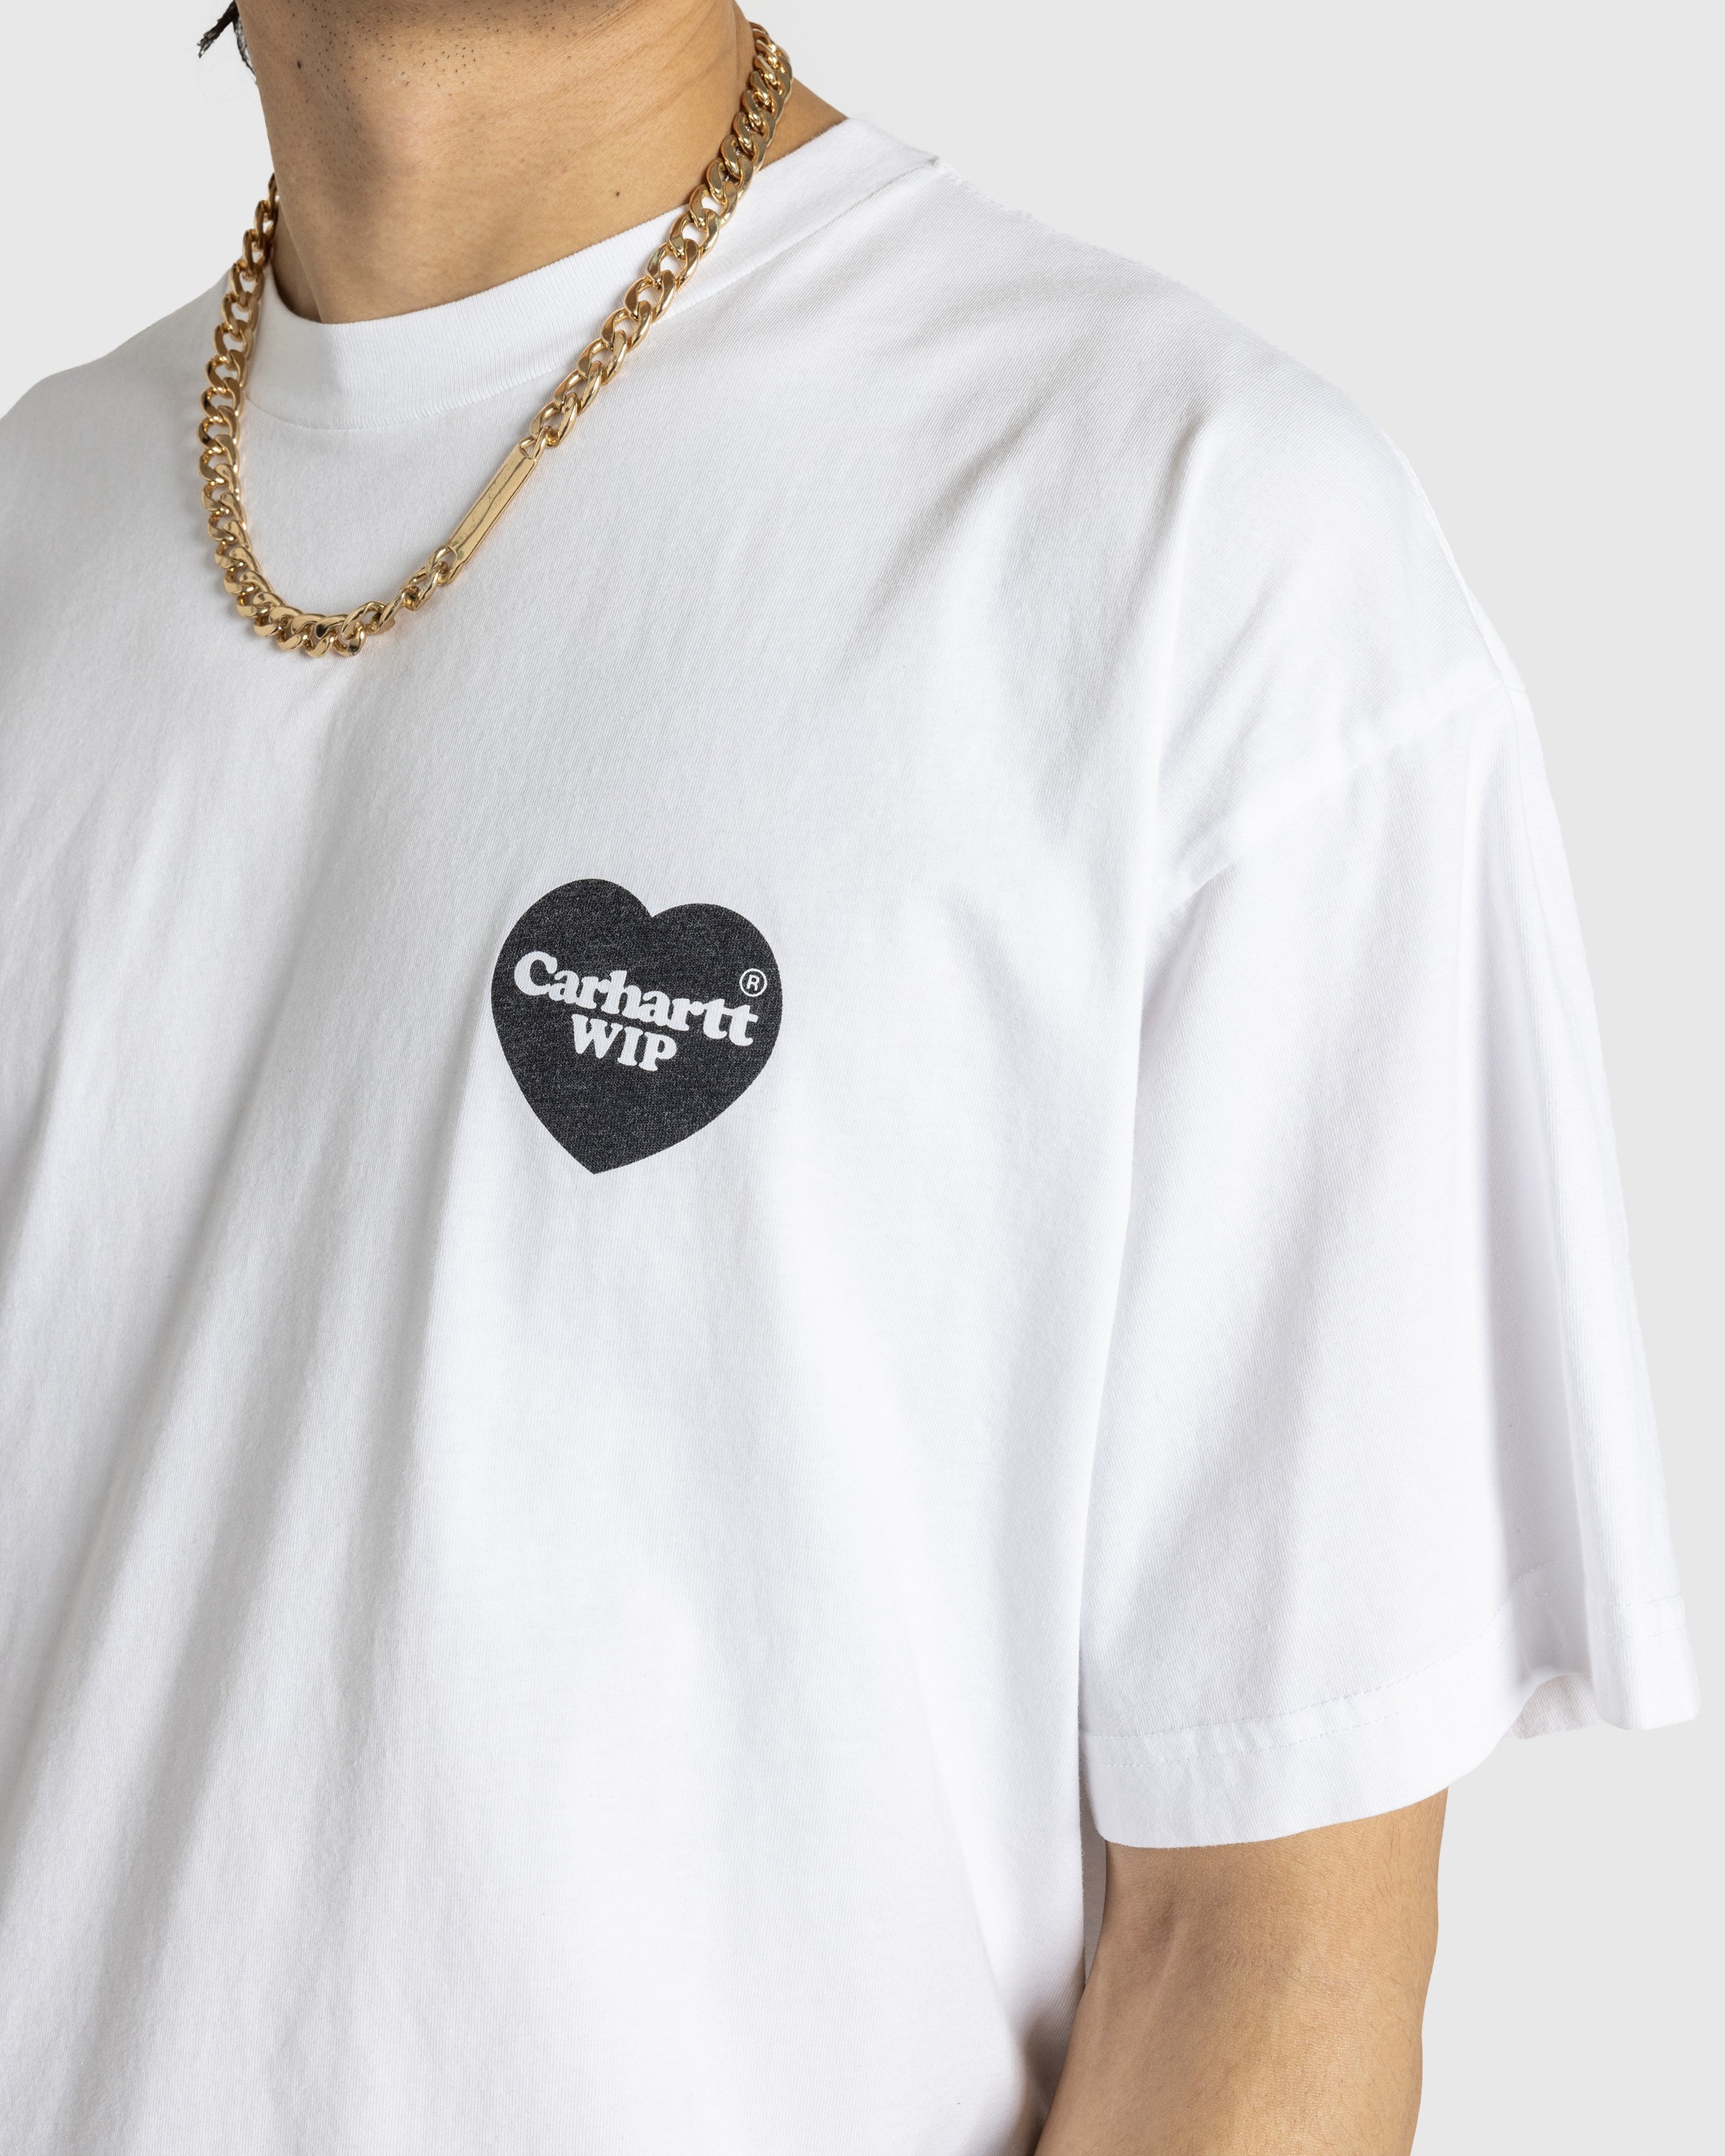 Carhartt WIP - S/S Heart Bandana TShirt White / Black /stone washed - Clothing - White - Image 5